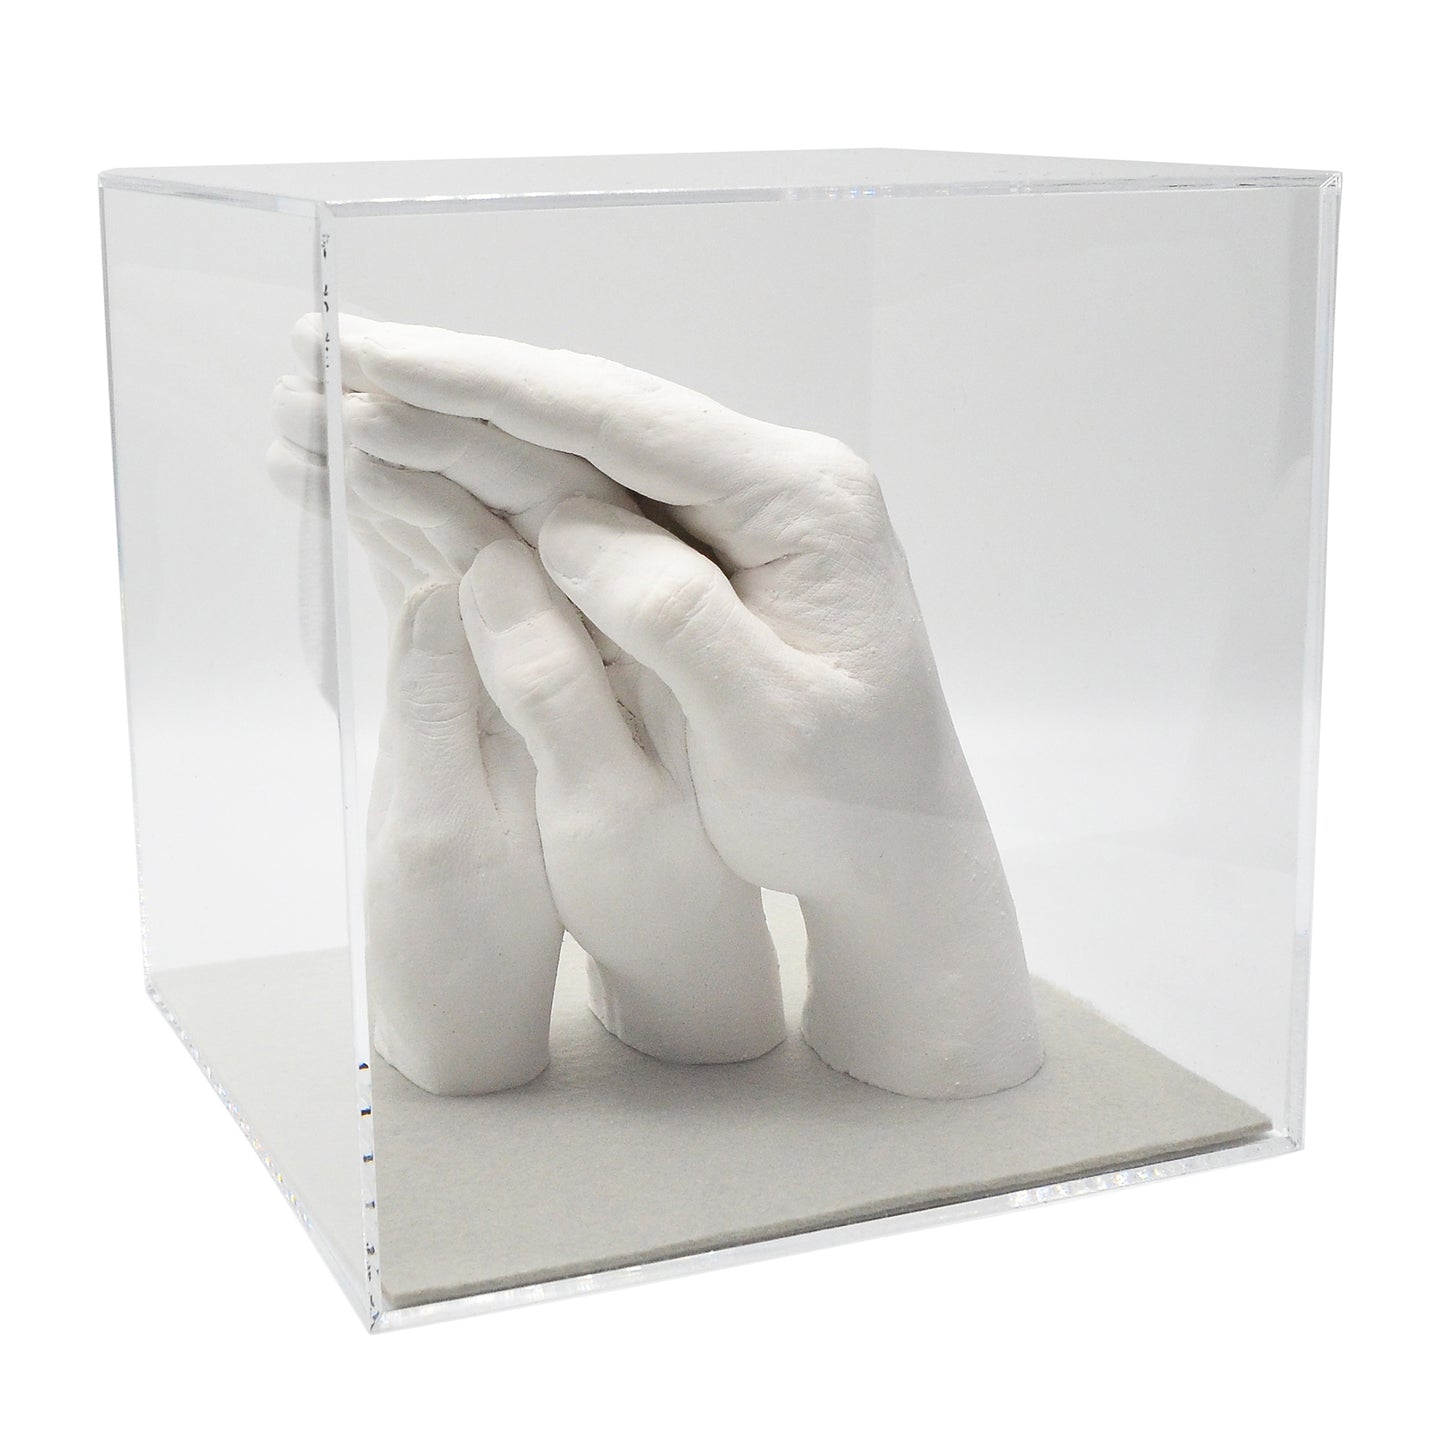 Abformsets "Family Hands" TRIO+ mit Acrylglaswürfel (17,5 x 17,5 x 17,5 cm)